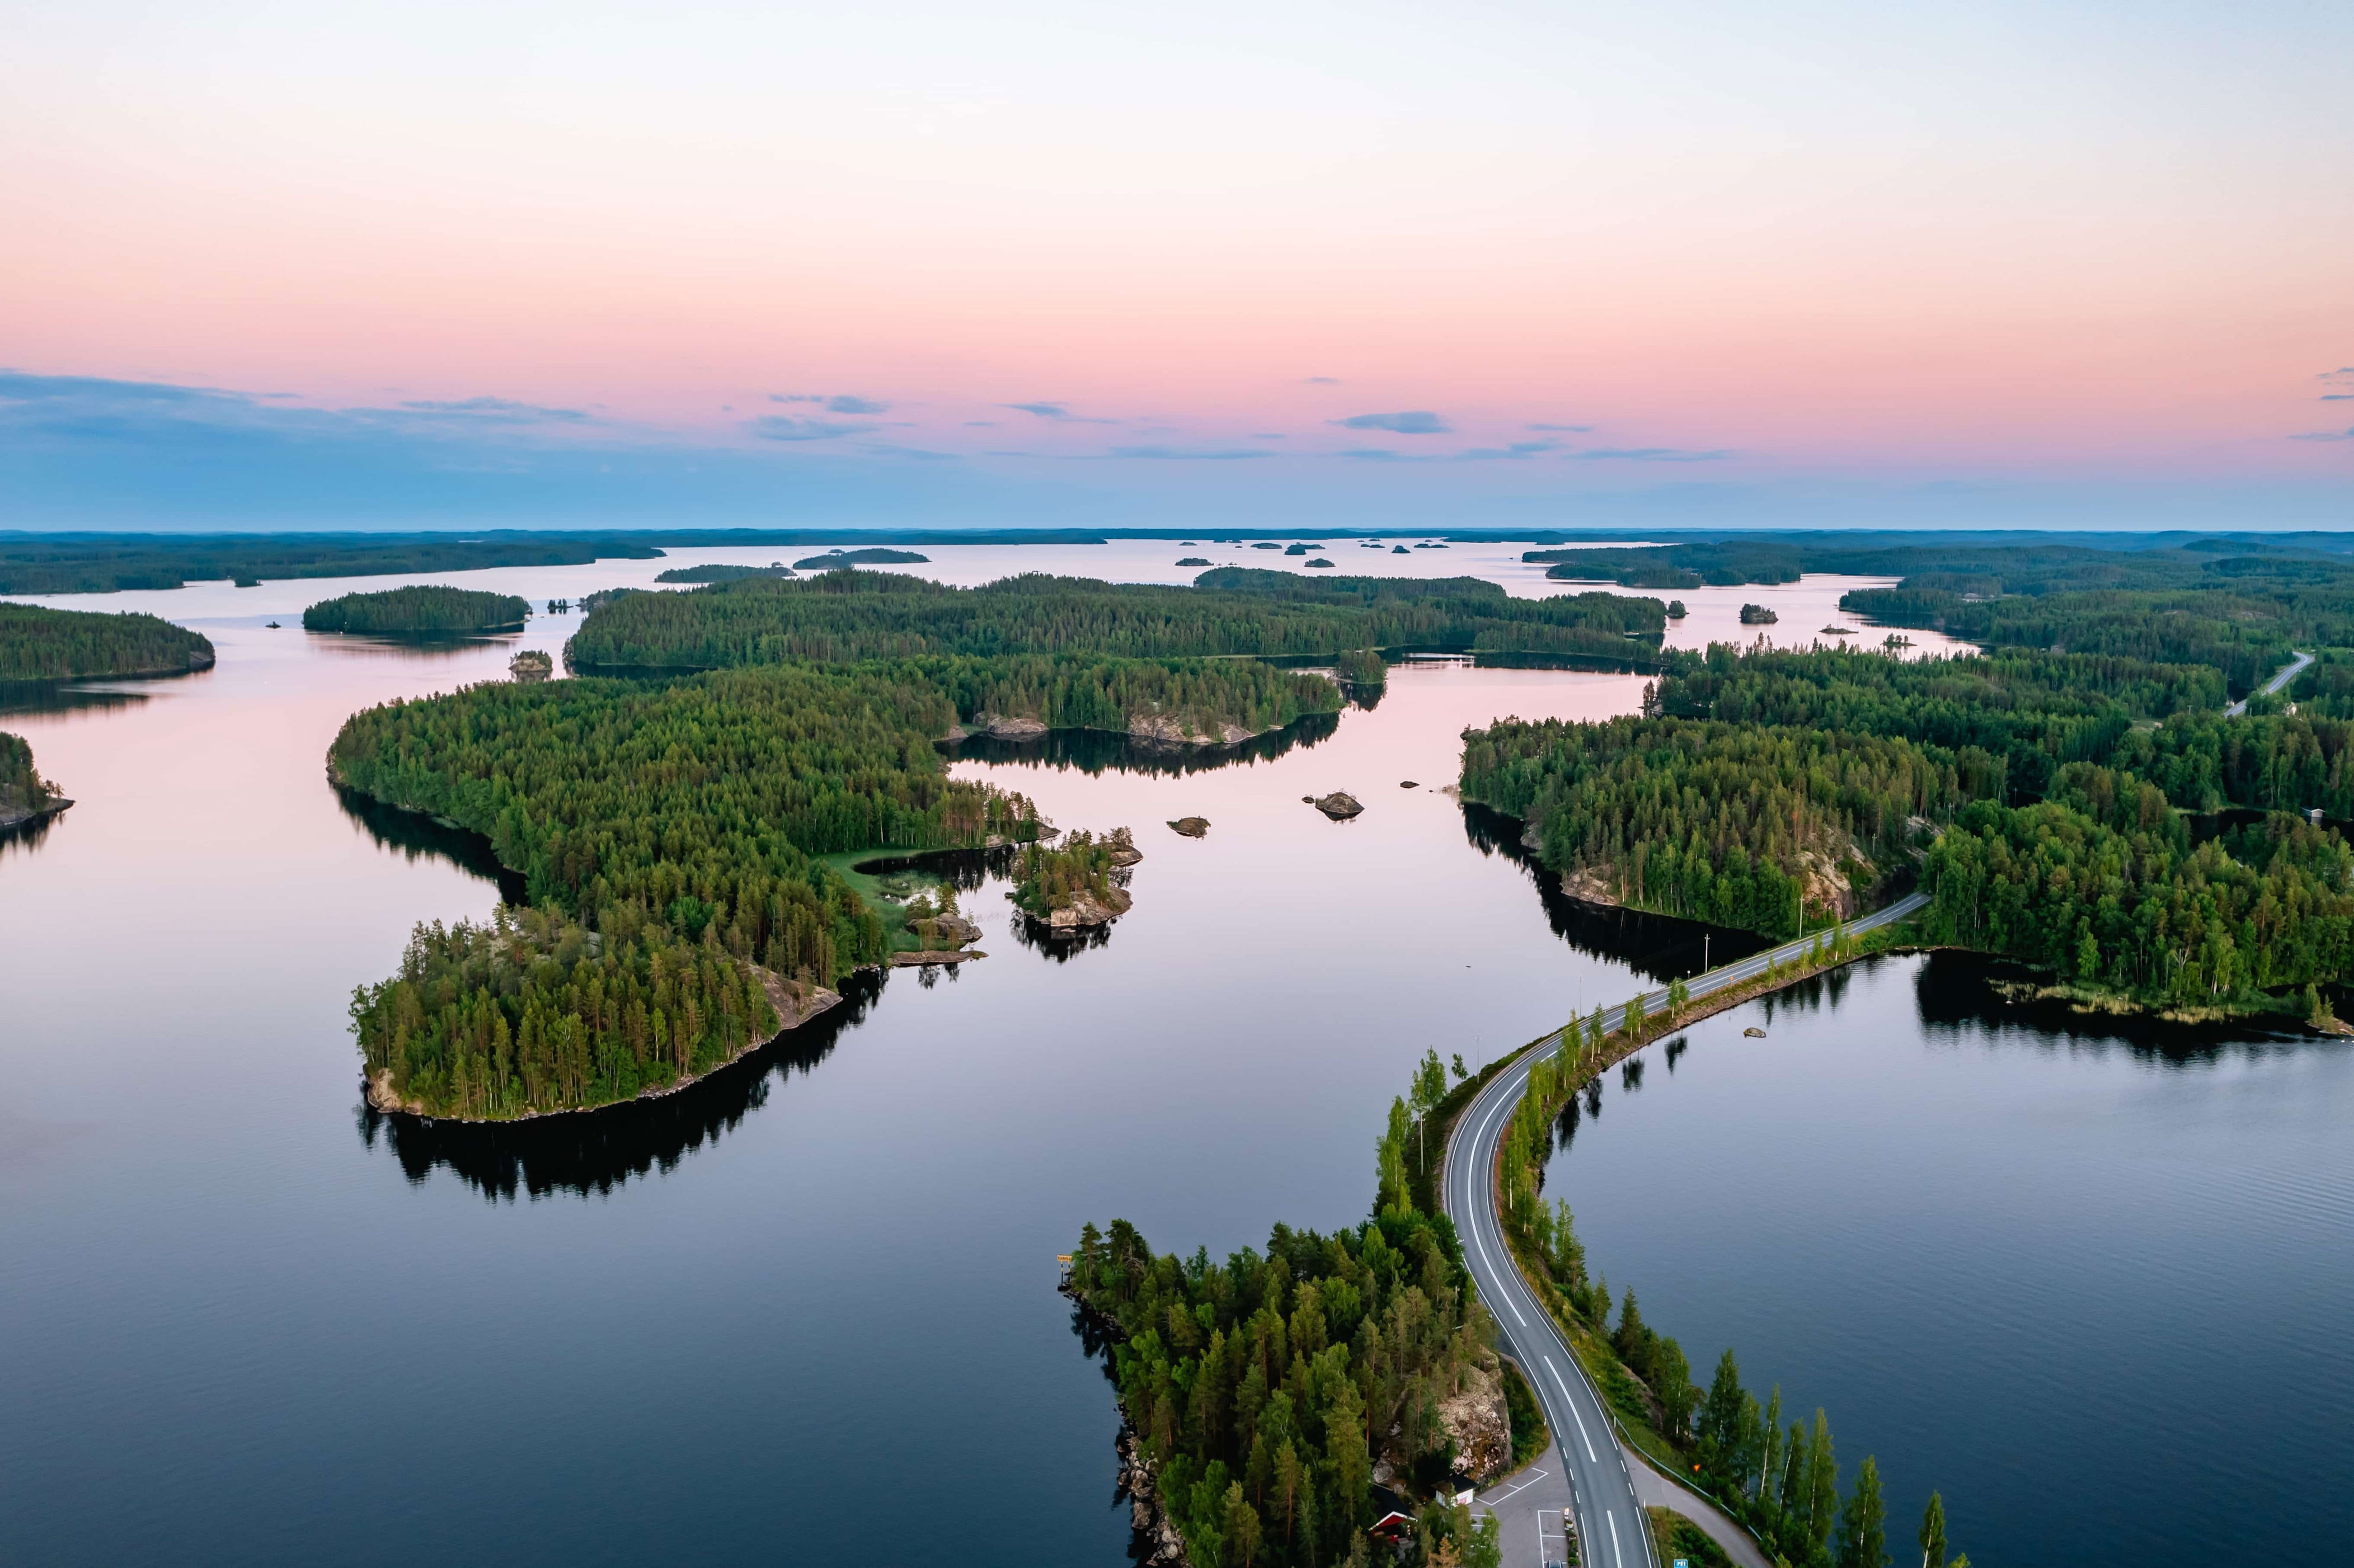 La région finlandaise de Saimaa a reçu le titre de <a href="https://www.tastesaimaa.fi/saimaa-european-region-of-gastronomy" rel="noreferrer noopener">région européenne de la gastronomie en 2024</a> afin de célébrer la culture gastronomique unique de la région. Saimaa est le plus grand lac de Finlande: il présente le plus long littoral lacustre du monde et compte un nombre incroyable de 13 710 îles. En matière d’alimentation, les <a href="https://www.visitsaimaa.fi/en/finnish-fast-food-fried-vendace/" rel="noreferrer noopener">corégones blancs</a>, un poisson d’eau douce, est une spécialité de la région. Si vous en avez la chance, goûtez aux <em>lörtsy</em>, des pâtisseries sucrées ou salées, sur la place du marché de Savonlinna. Que vous ayez envie de faire du kayak à travers les chaînes d’îles quasi labyrinthiques ou que vous préfériez vous poser dans un sauna traditionnel chauffé au bois, il y a beaucoup à faire dans cette destination enchanteresse.